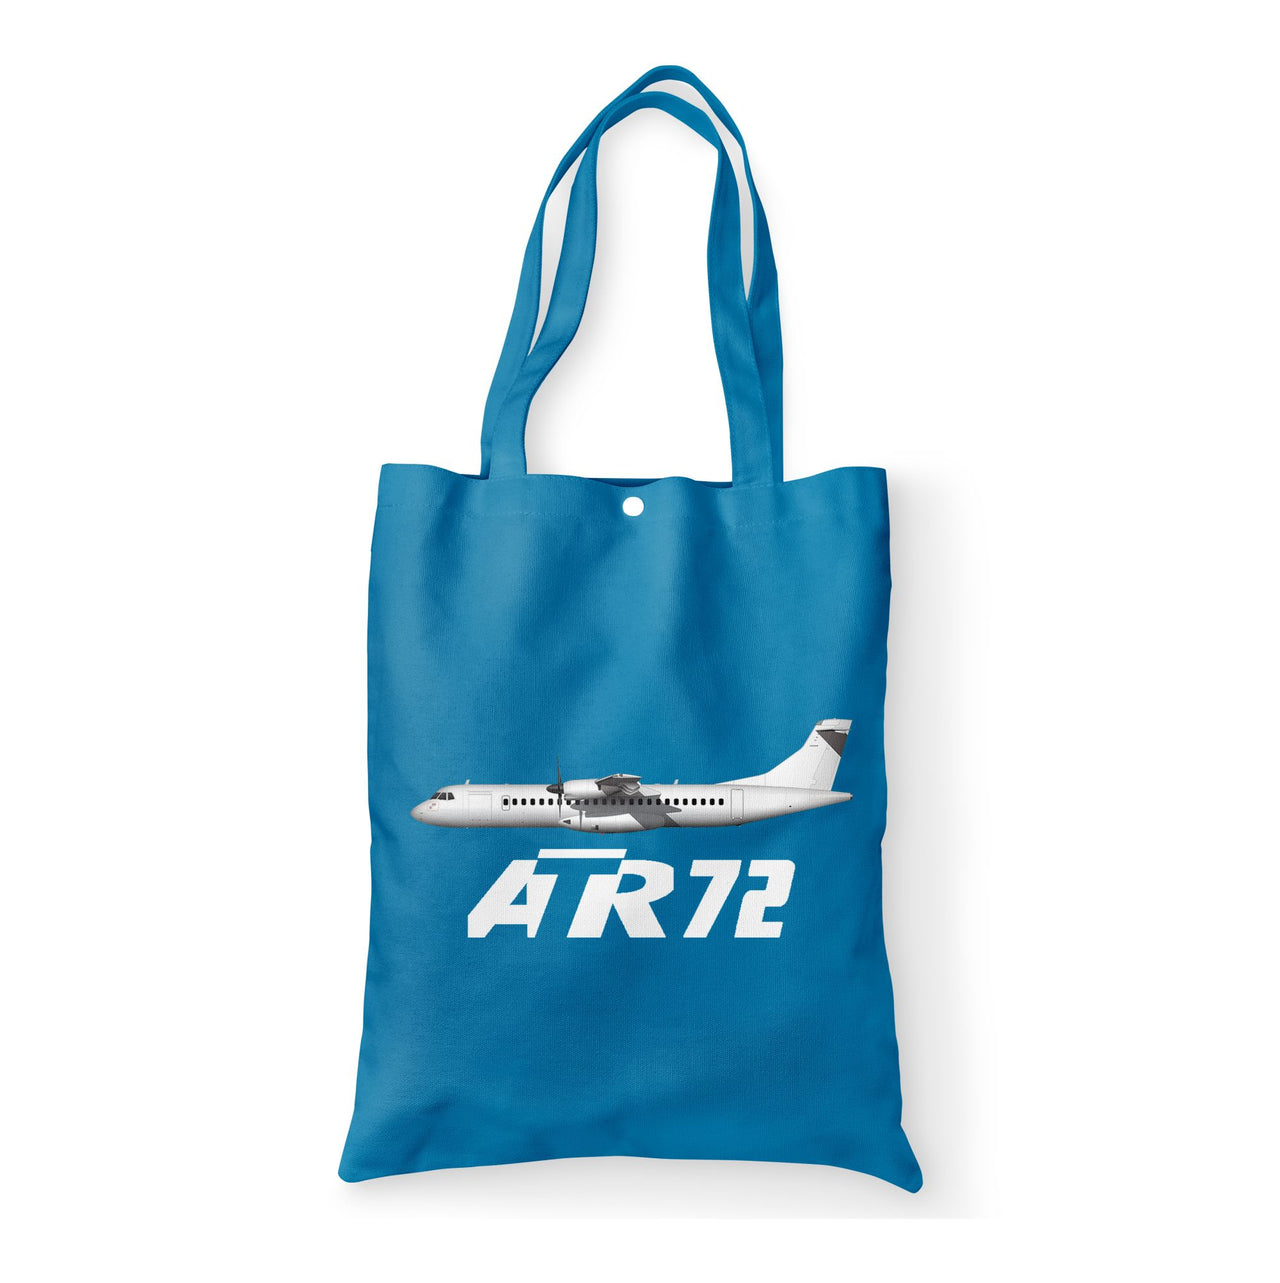 The ATR72 Designed Tote Bags